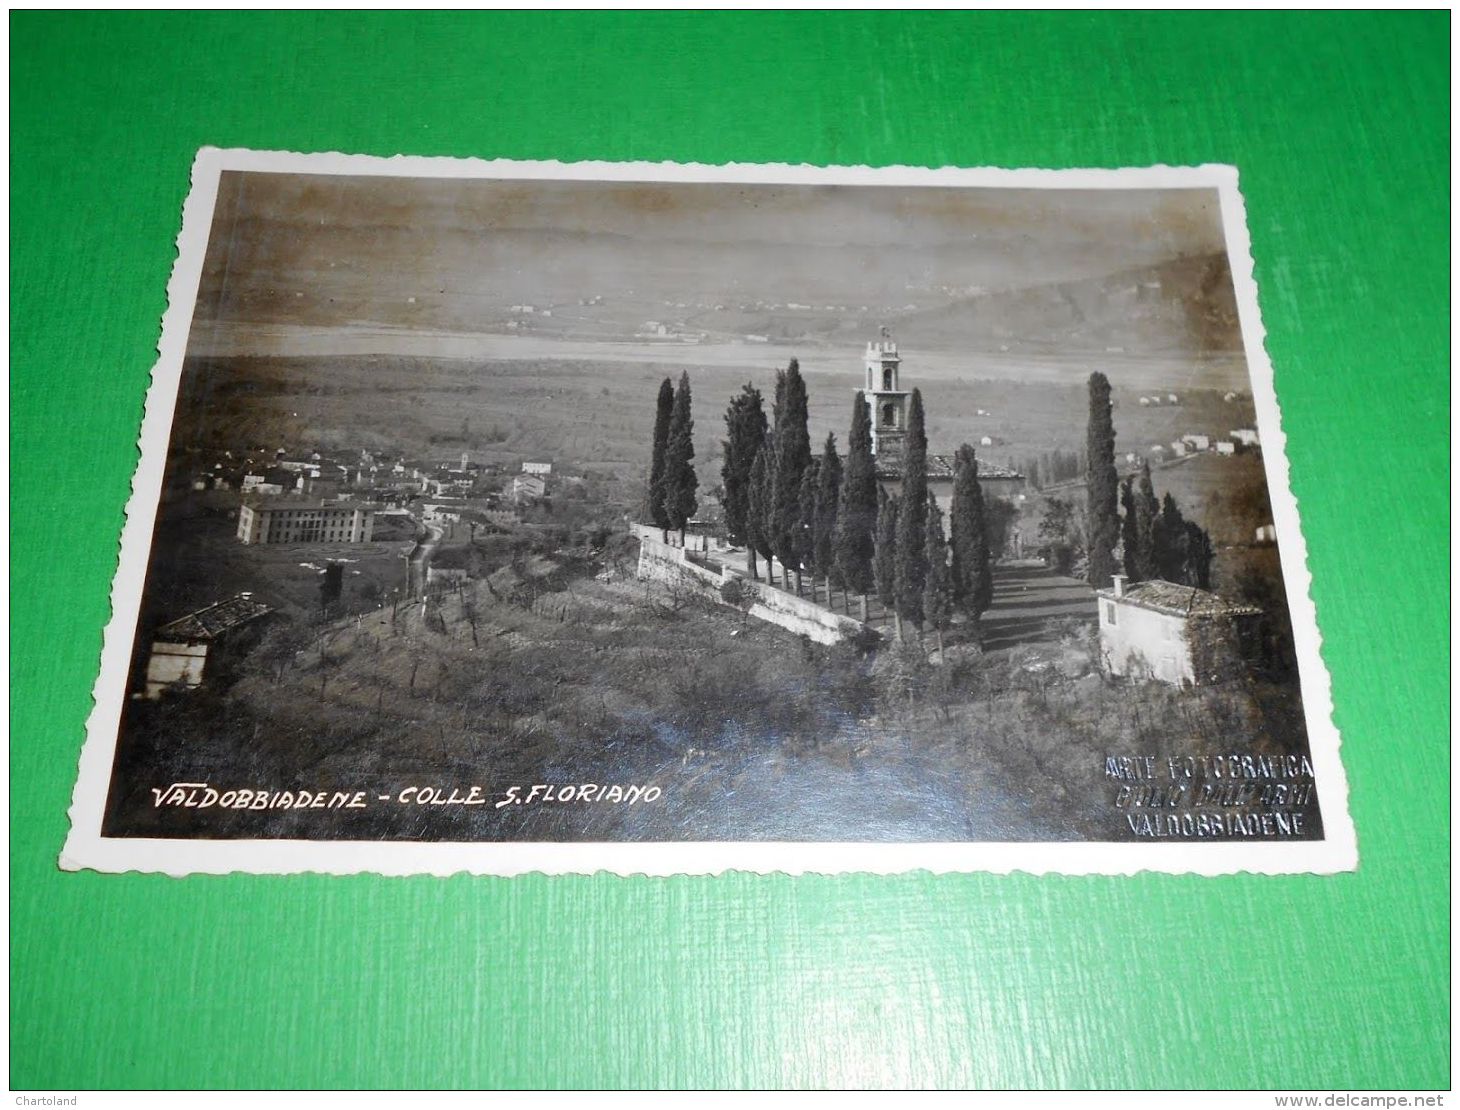 Cartolina Valdobbiadene - Colle S. Floriano 1934 - Treviso